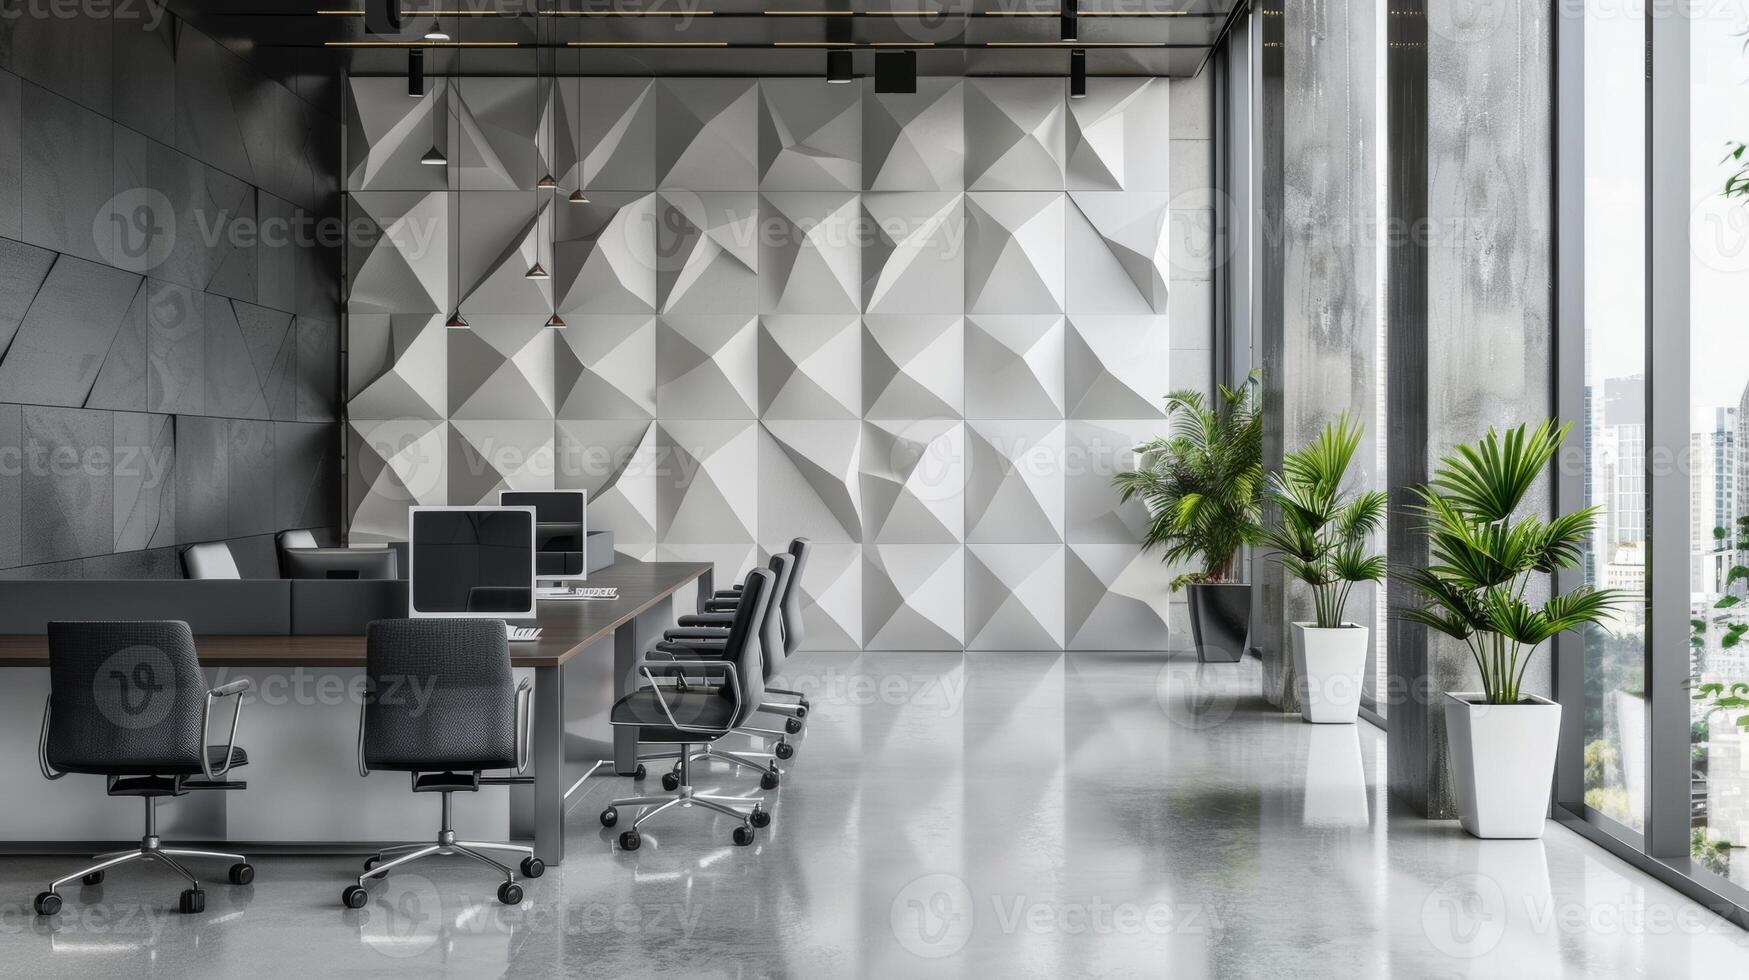 un monocromo geométrico cerámico pared instalación agregando textura y profundidad a un pulcro oficina espacio. foto